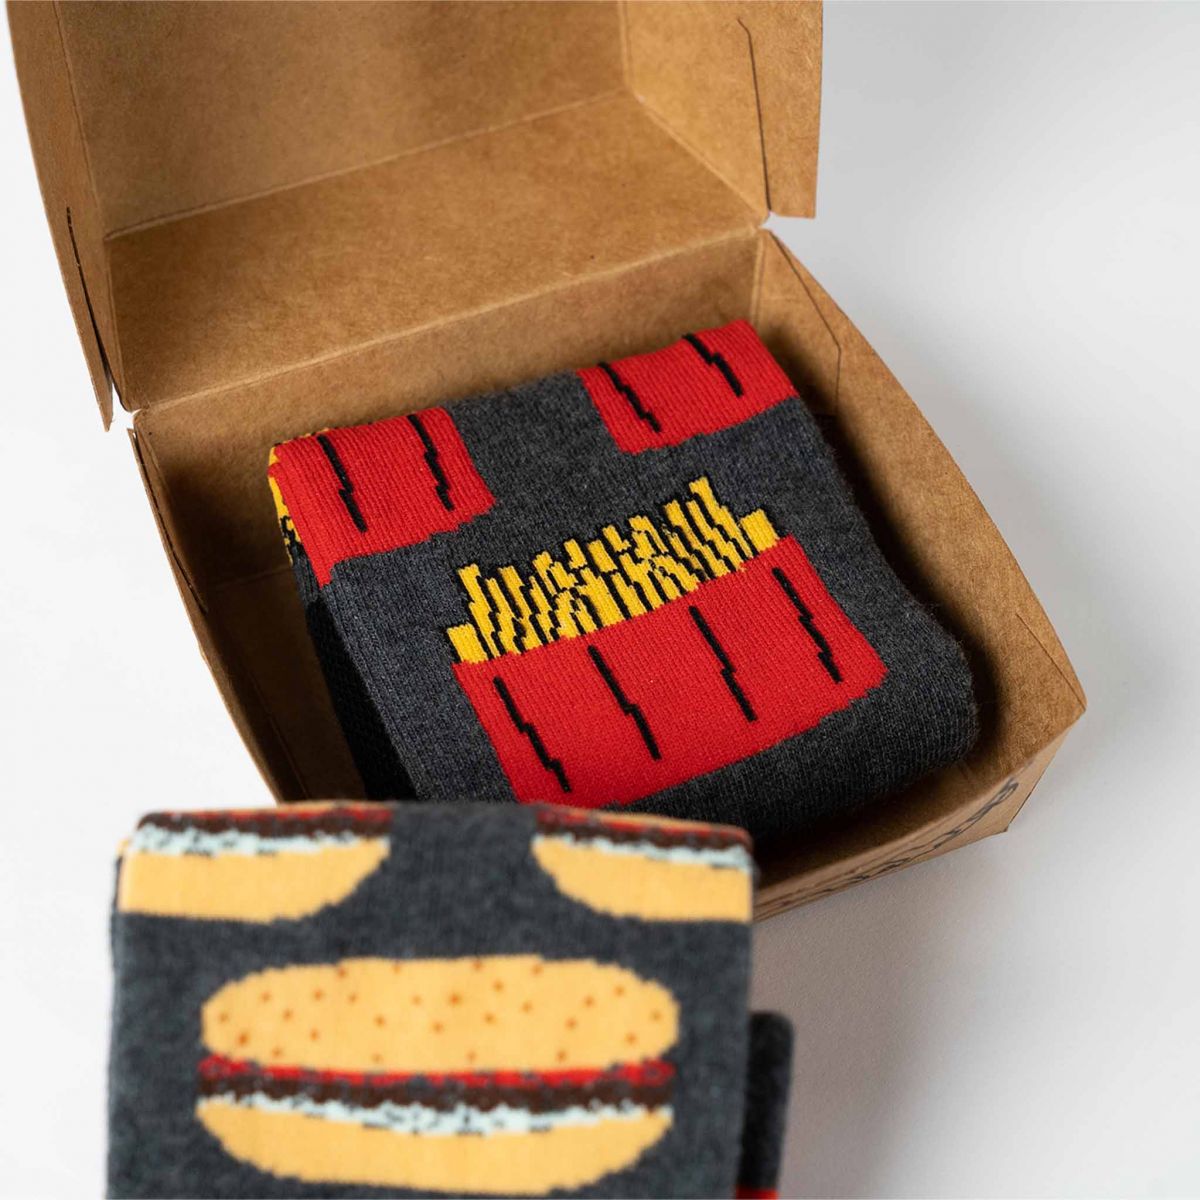 Socken - Hamburger + Pommes frites - 2 Paar in einer Geschenkbox tp4